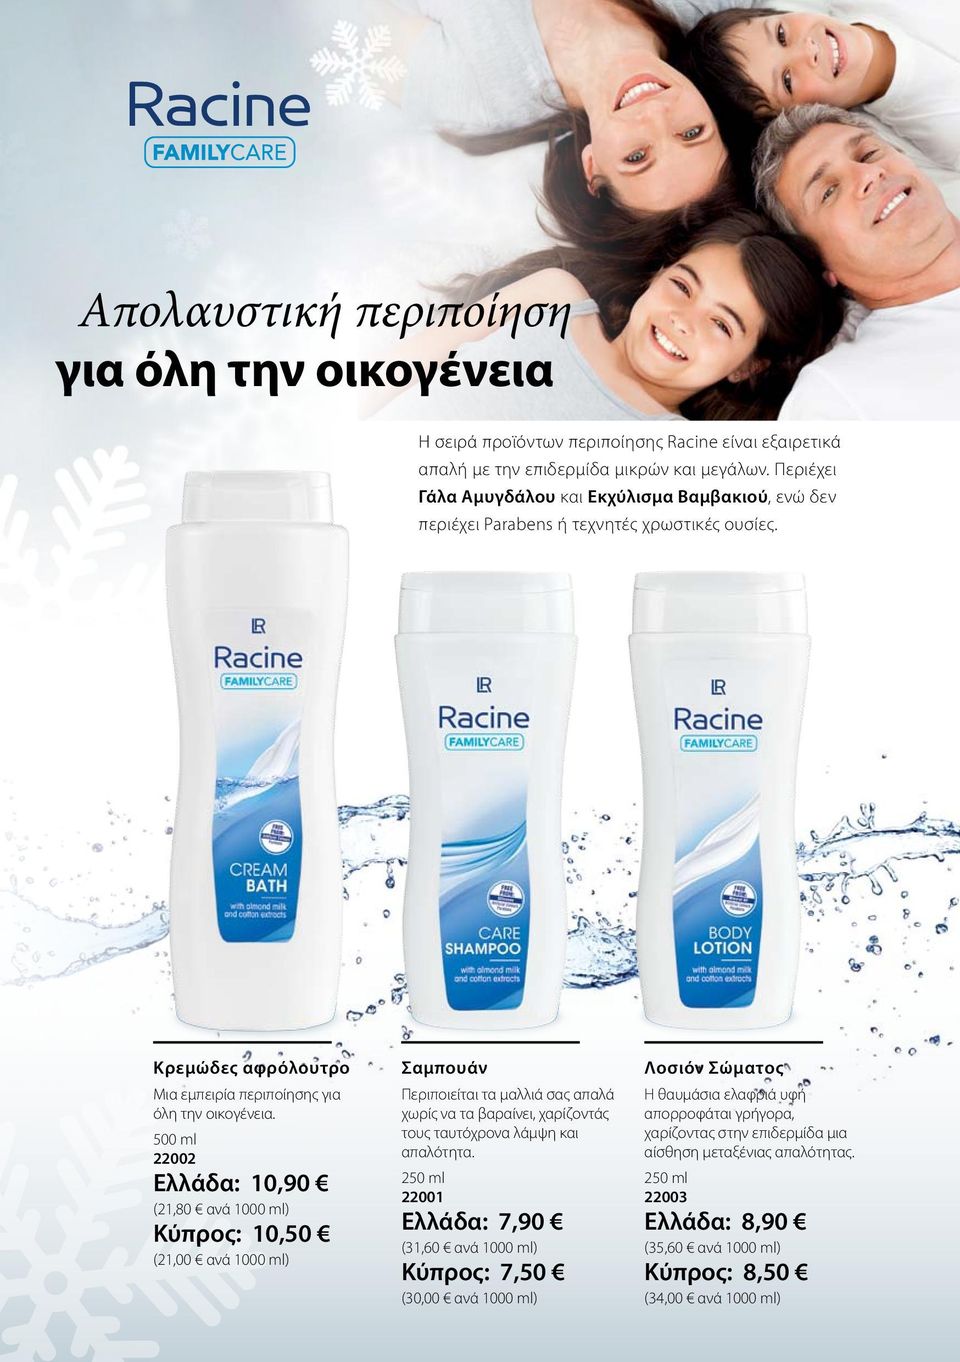 500 ml 22002 Ελλάδα: 10,90 (21,80 ανά 1000 ml) Κύπρος: 10,50 (21,00 ανά 1000 ml) Σαμπουάν Περιποιείται τα μαλλιά σας απαλά χωρίς να τα βαραίνει, χαρίζοντάς τους ταυτόχρονα λάμψη και απαλότητα.